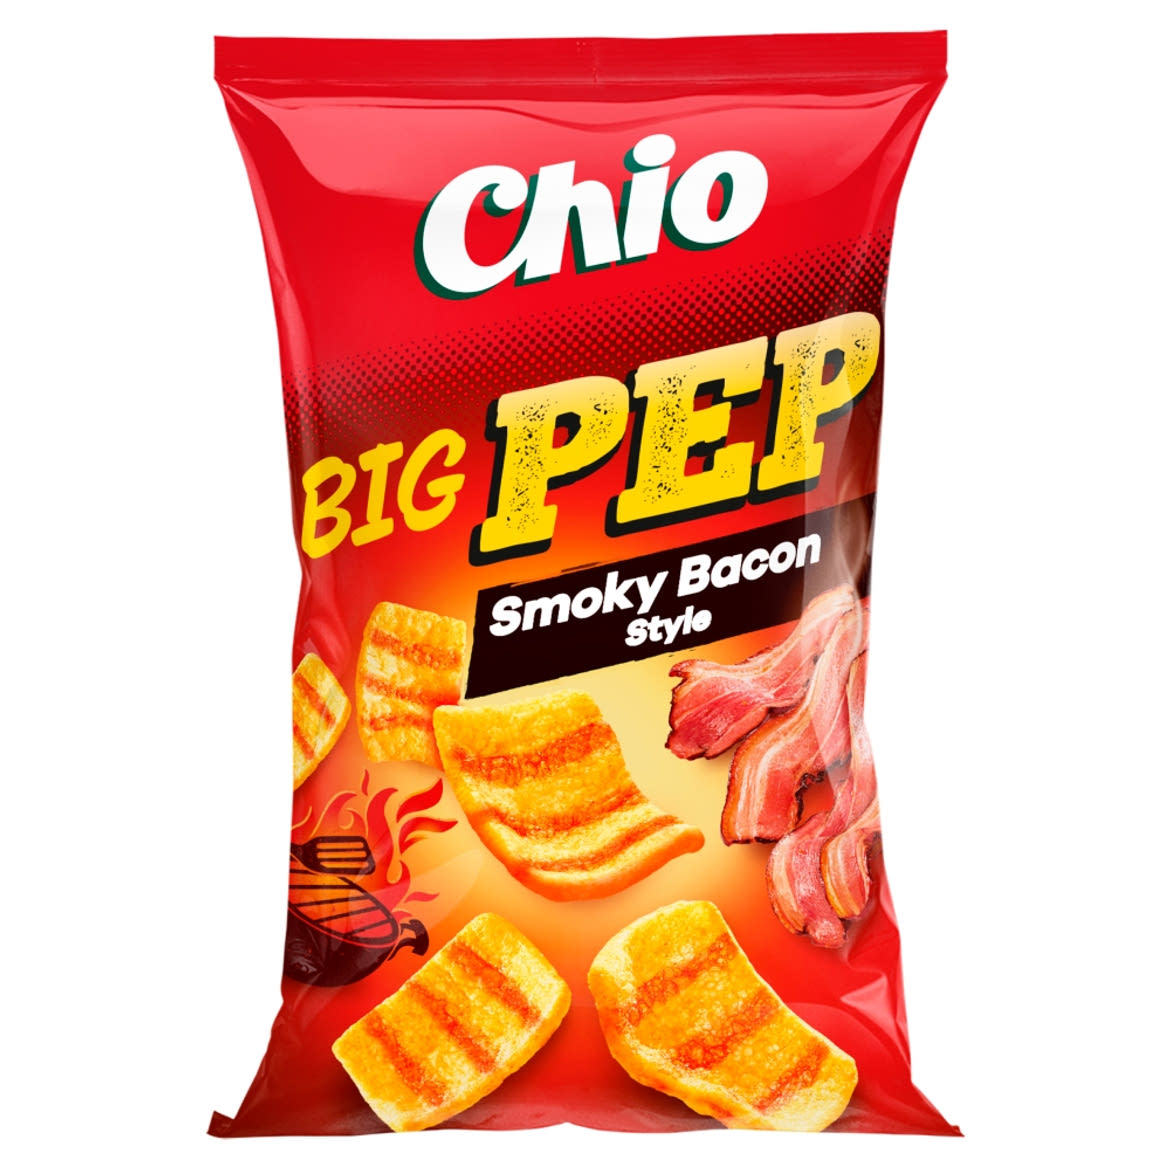 Chio Big Pep Smoky Bacon Style bacon ízű búza-burgonyasnack